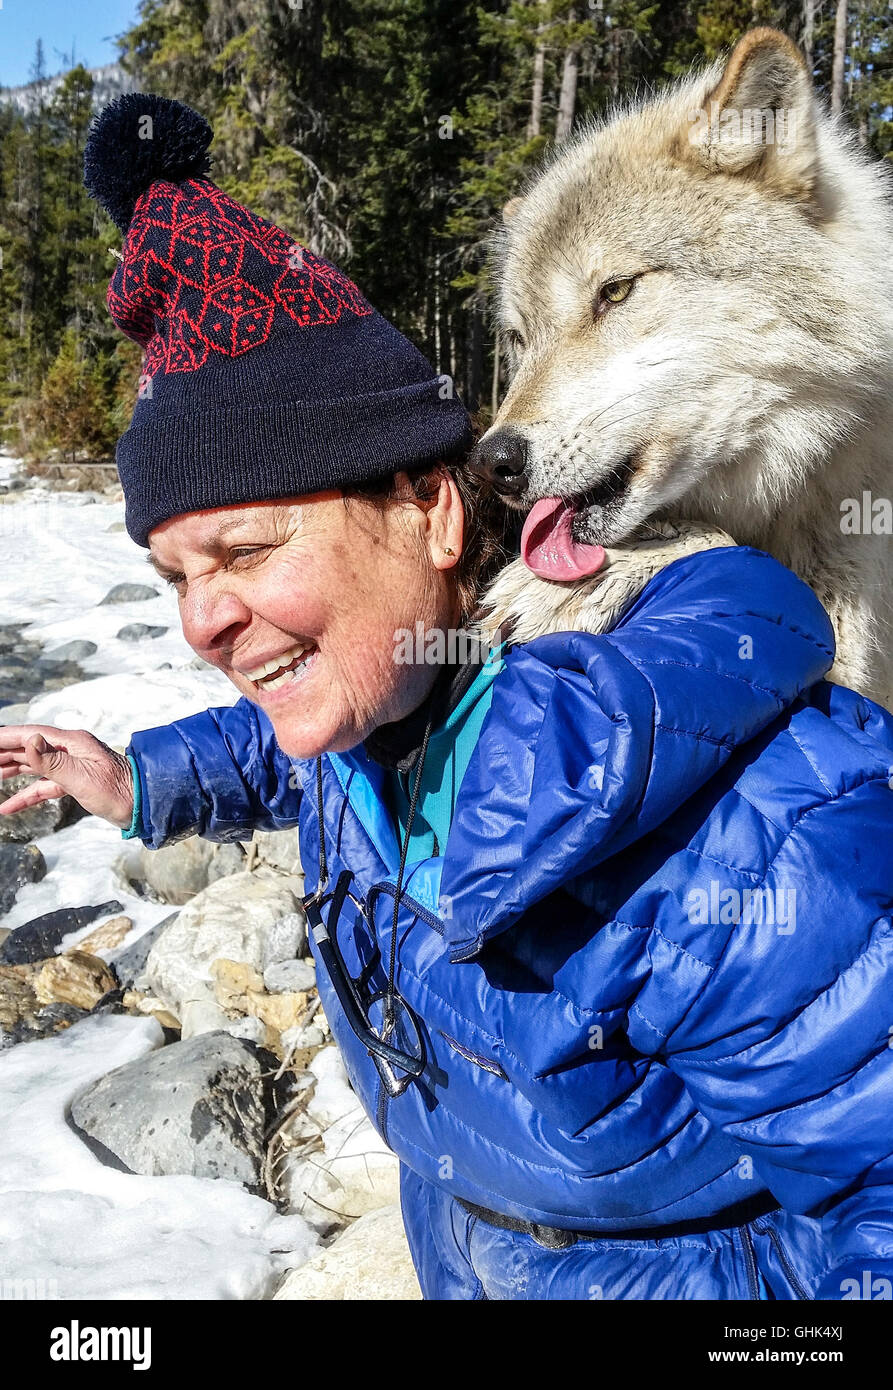 La donna incontra Scrappy Dave, uno dei lupi su un lupo guidata a piedi attraverso la foresta con luci del nord Centro Lupo Foto Stock